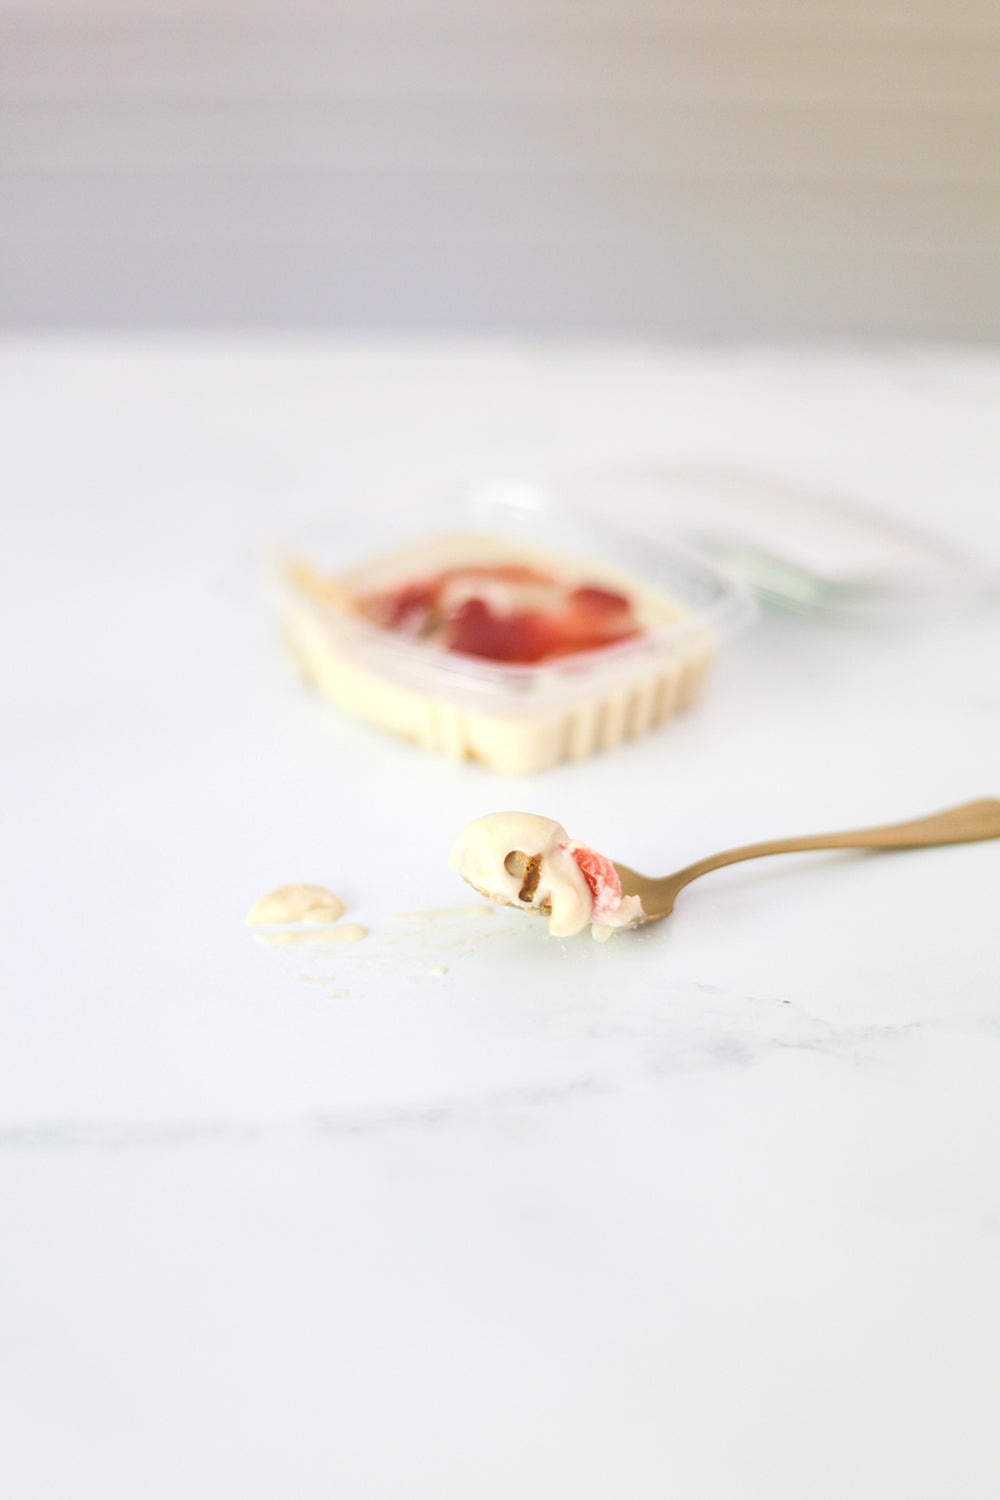 Cheesecake: Strawberry Jewel